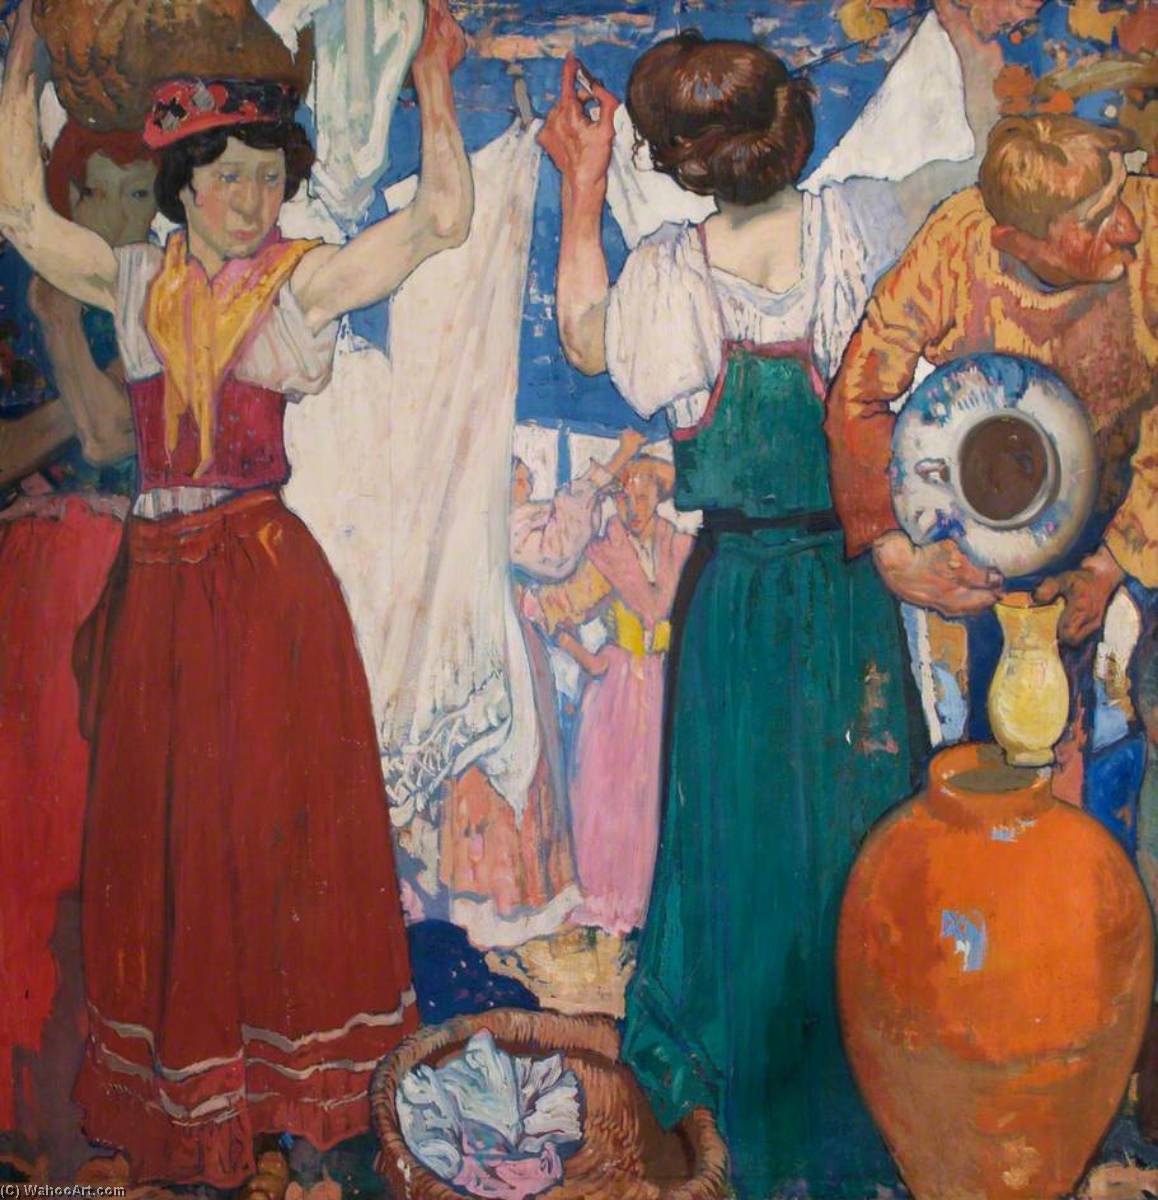 WikiOO.org - Encyclopedia of Fine Arts - Maleri, Artwork Frank William Brangwyn - The Washerwomen